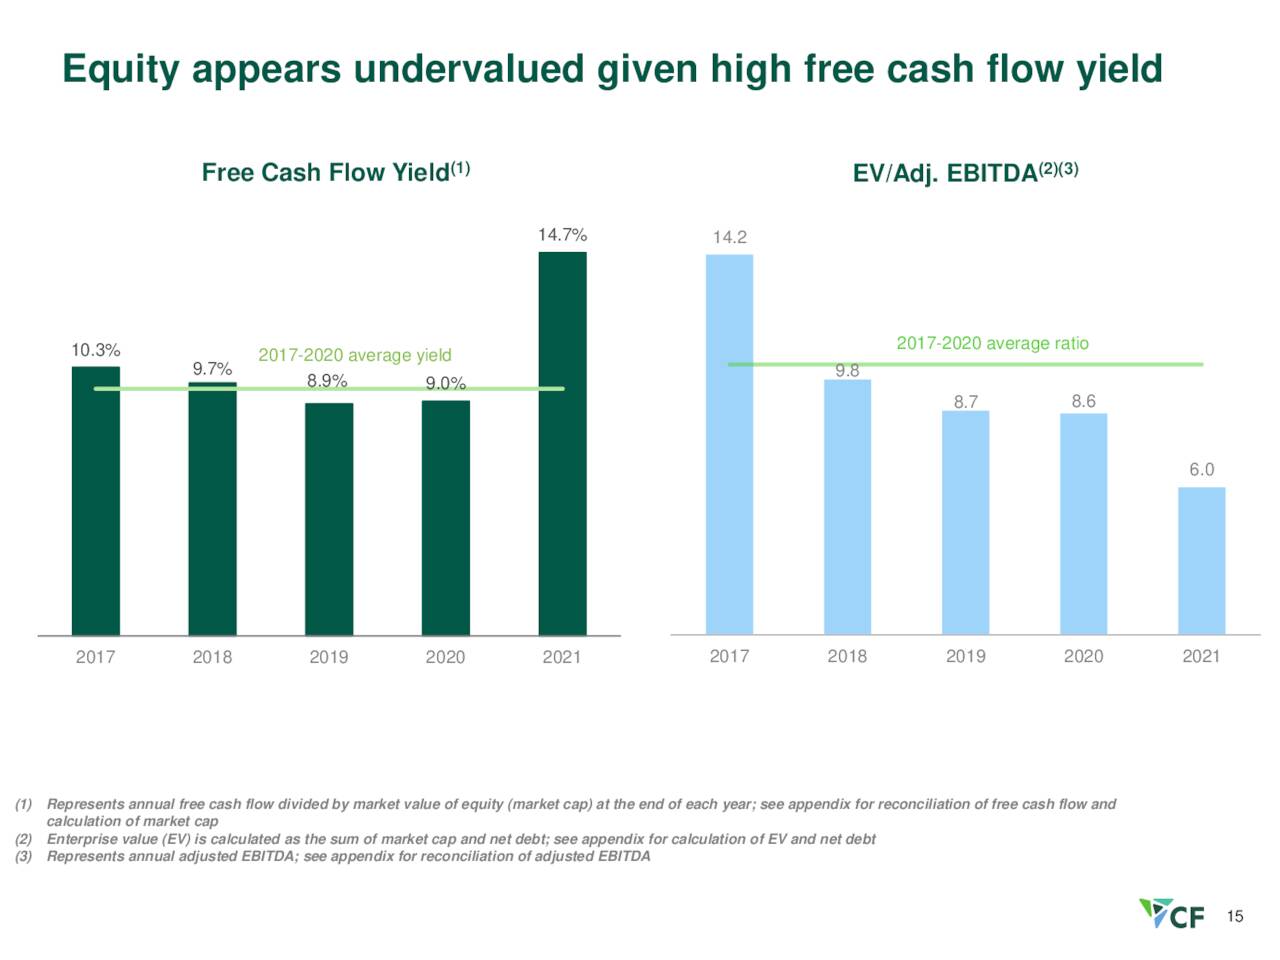 CF - Free Cash Flow Yield